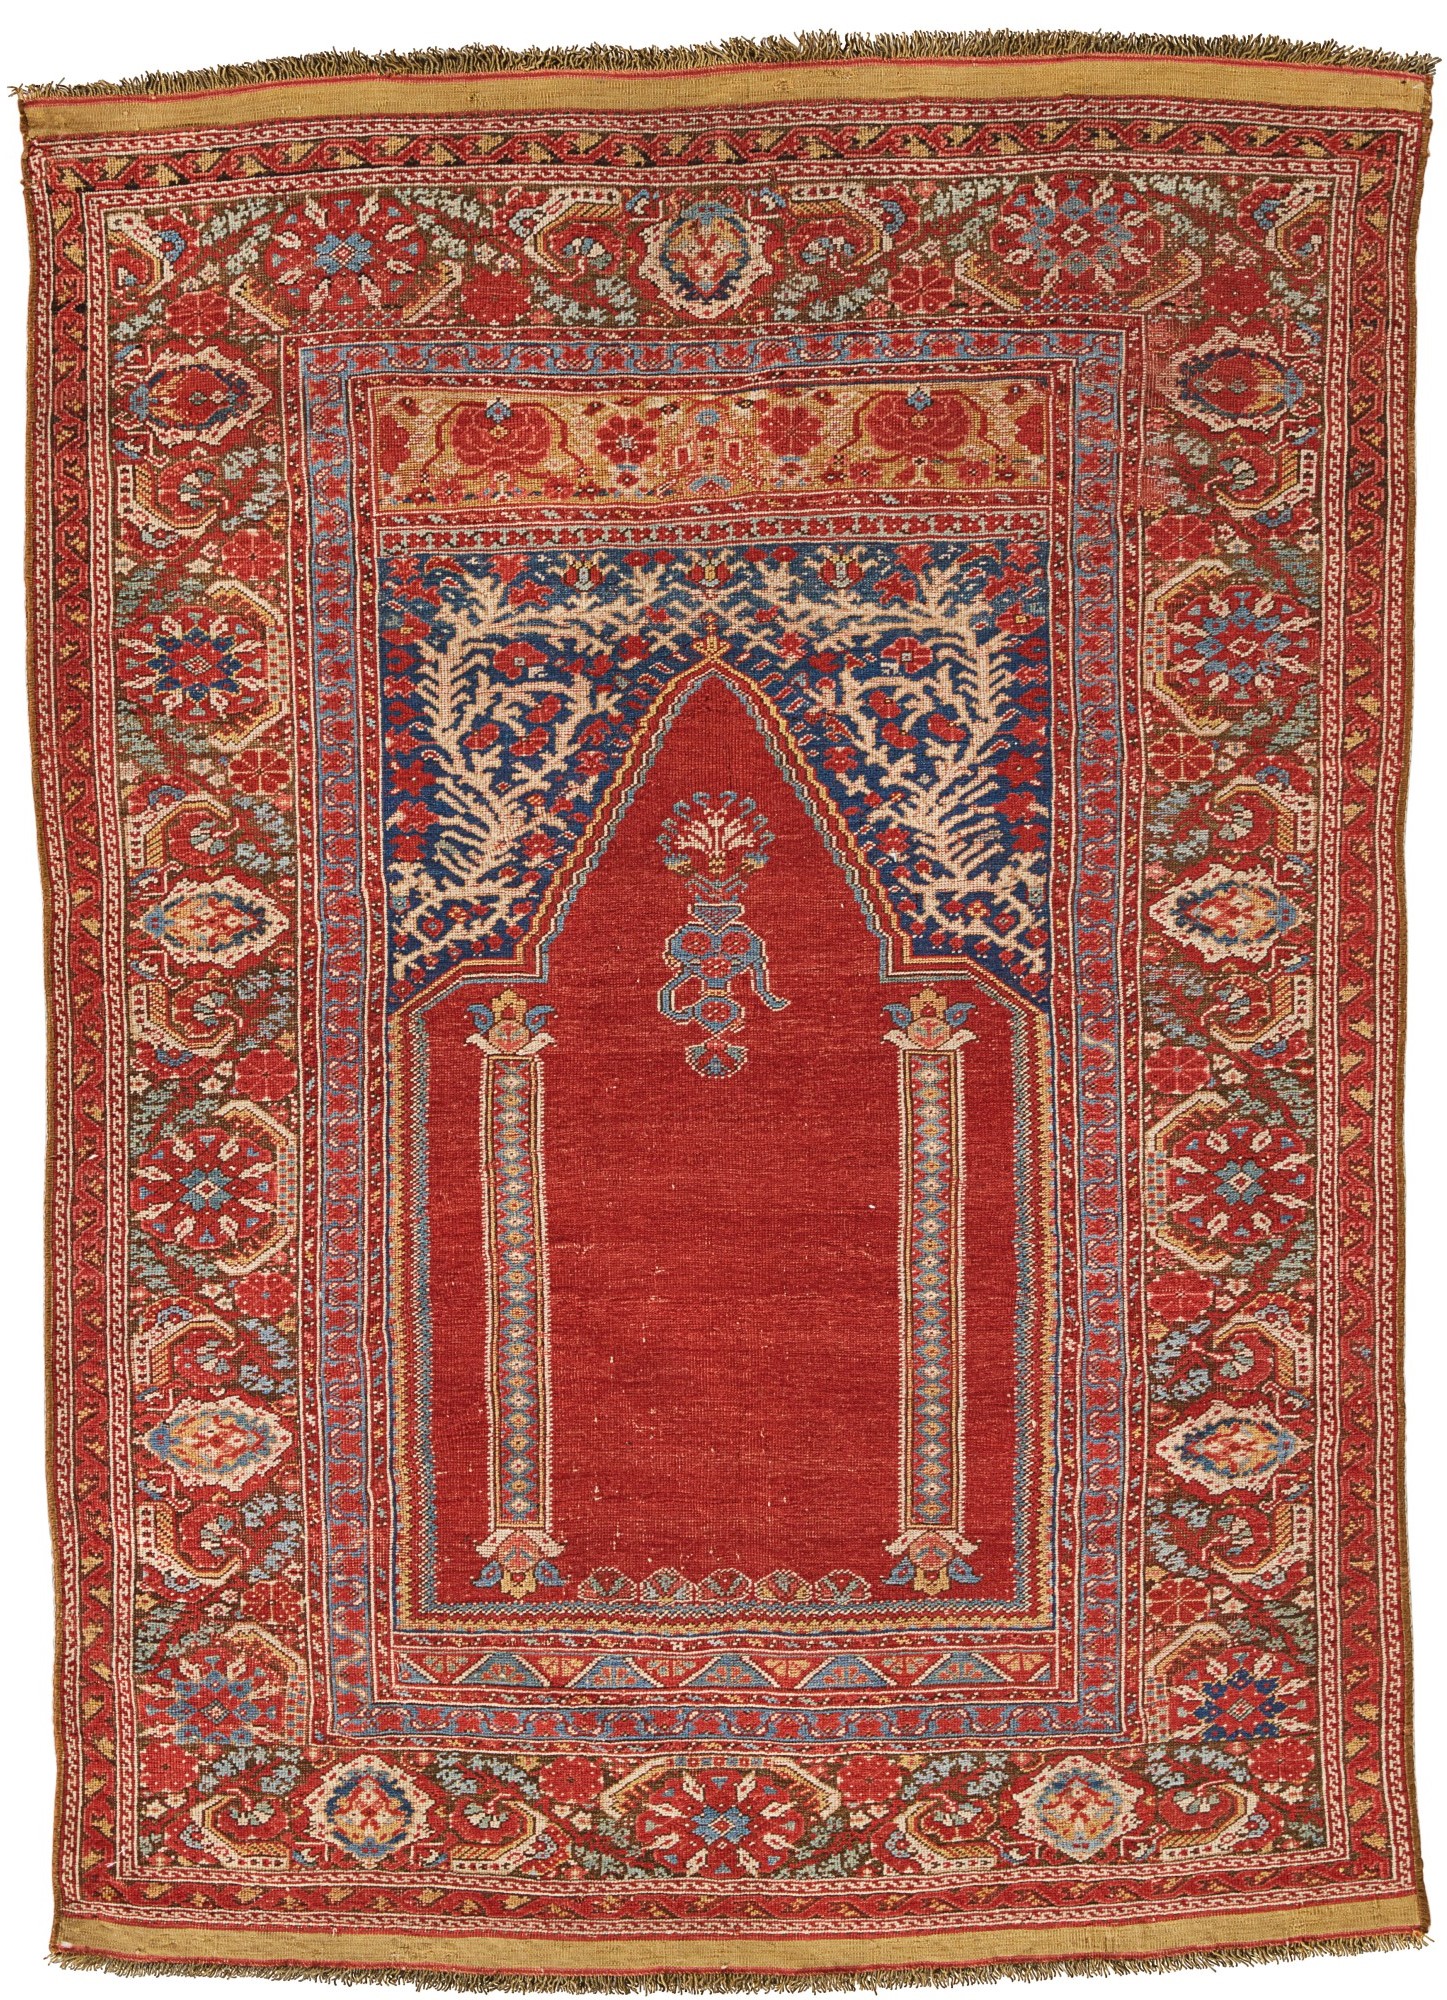 Gordes carpet, late 18th century, Western Turkey